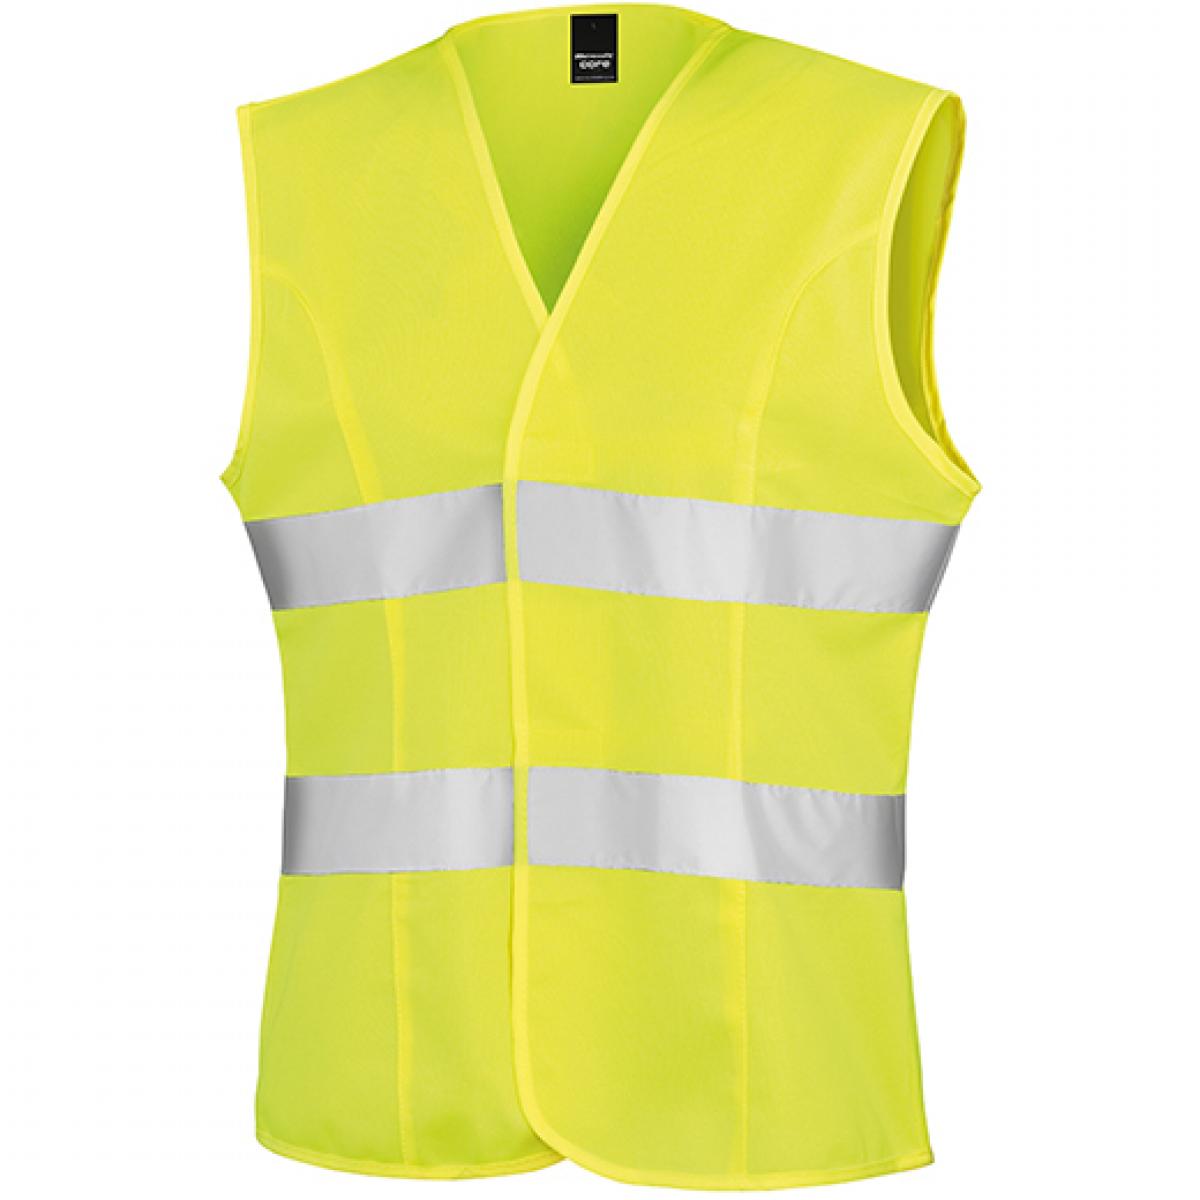 Hersteller: Result Core Herstellernummer: R334F Artikelbezeichnung: Damen Sicherheitsweste High Viz Tabard / leicht figurbetont Farbe: Fluorescent Yellow